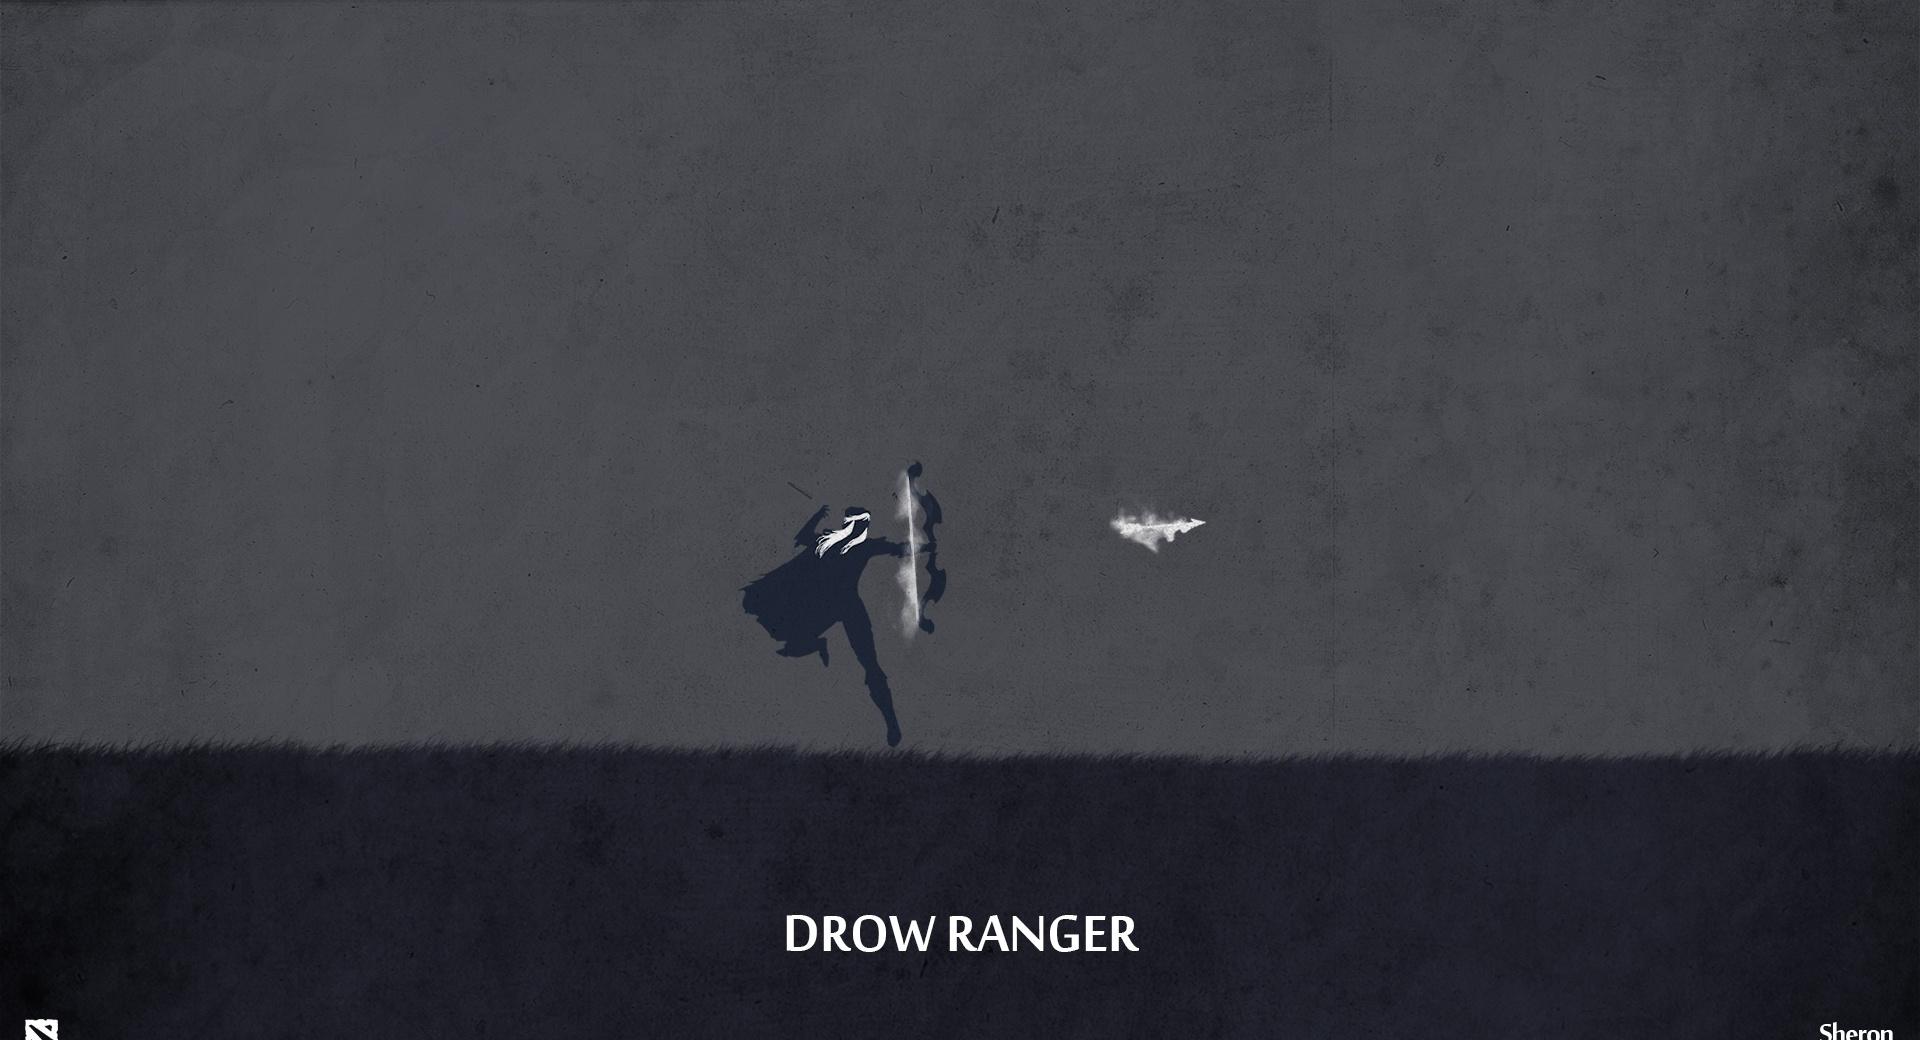 Drow Ranger - DotA 2 wallpapers HD quality